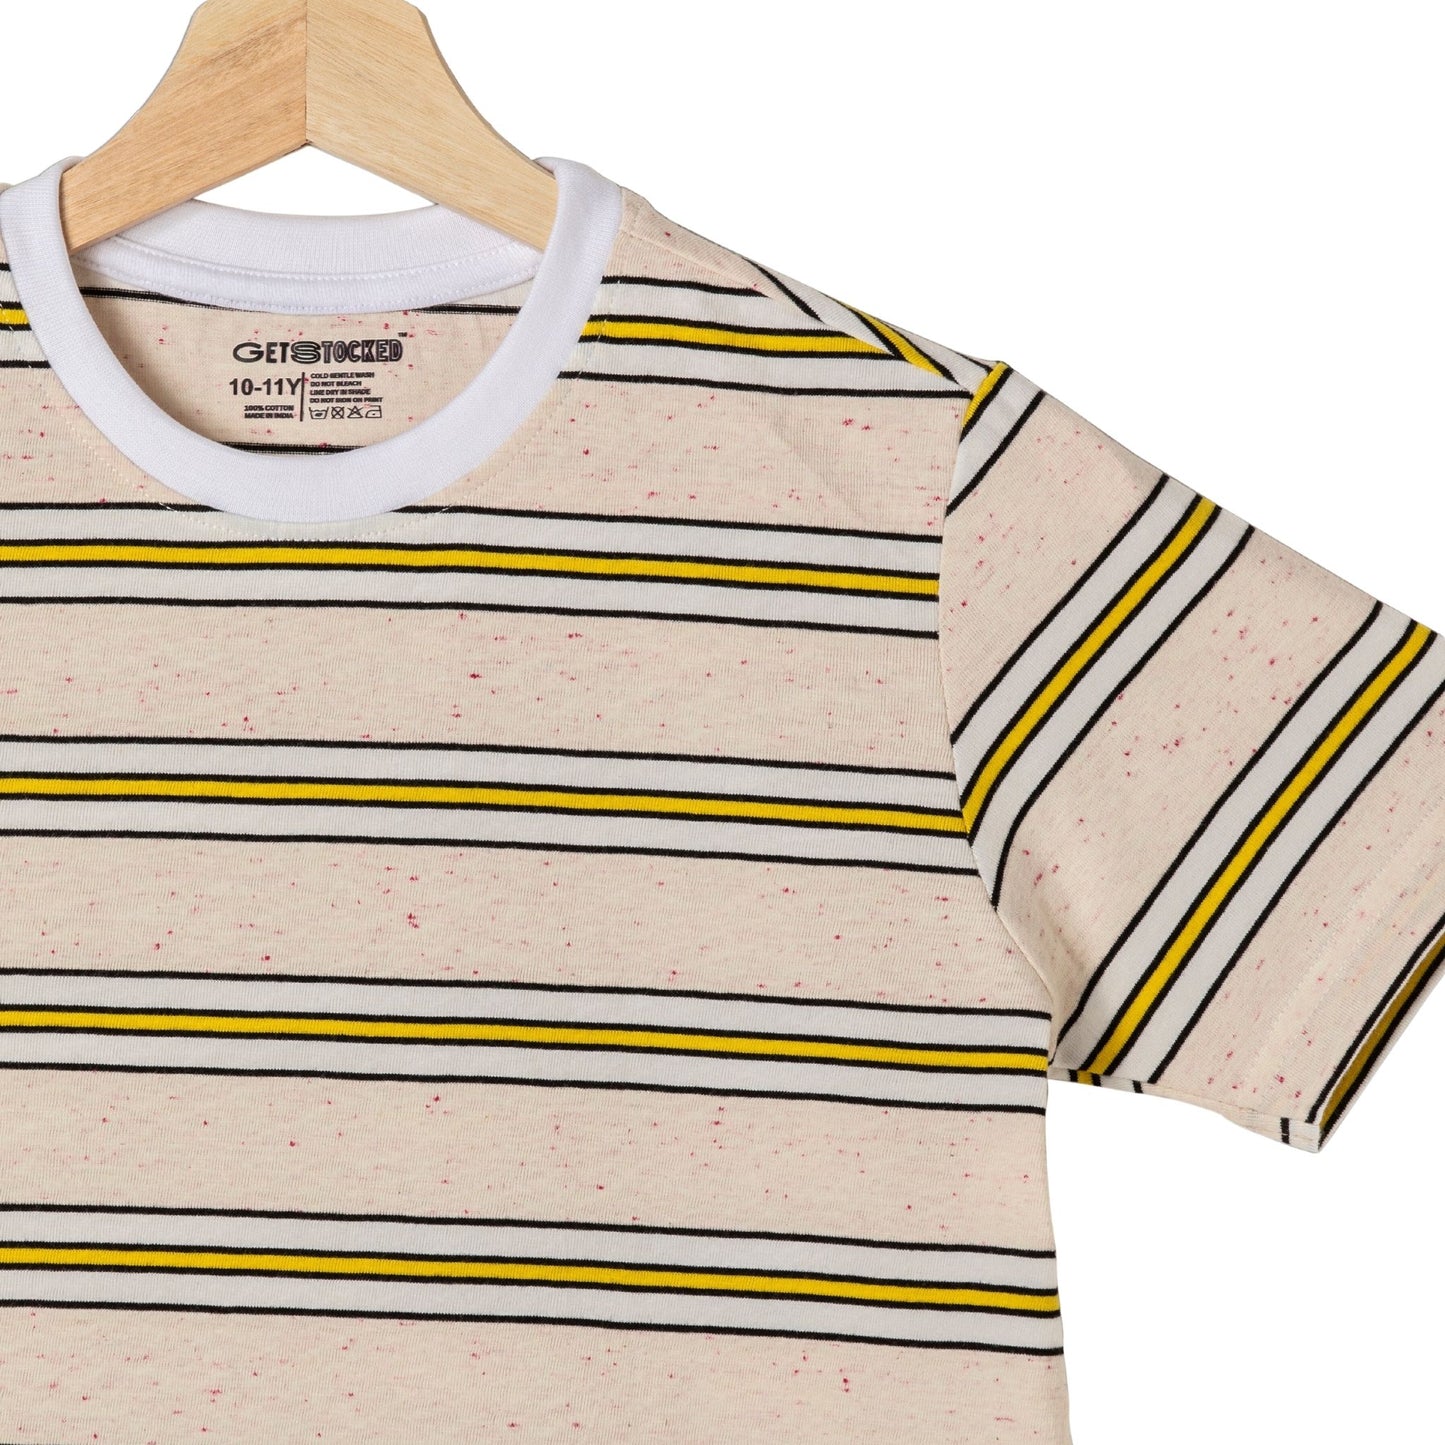 Striped Boys Cotton T-Shirt (Cream Multicoloured)